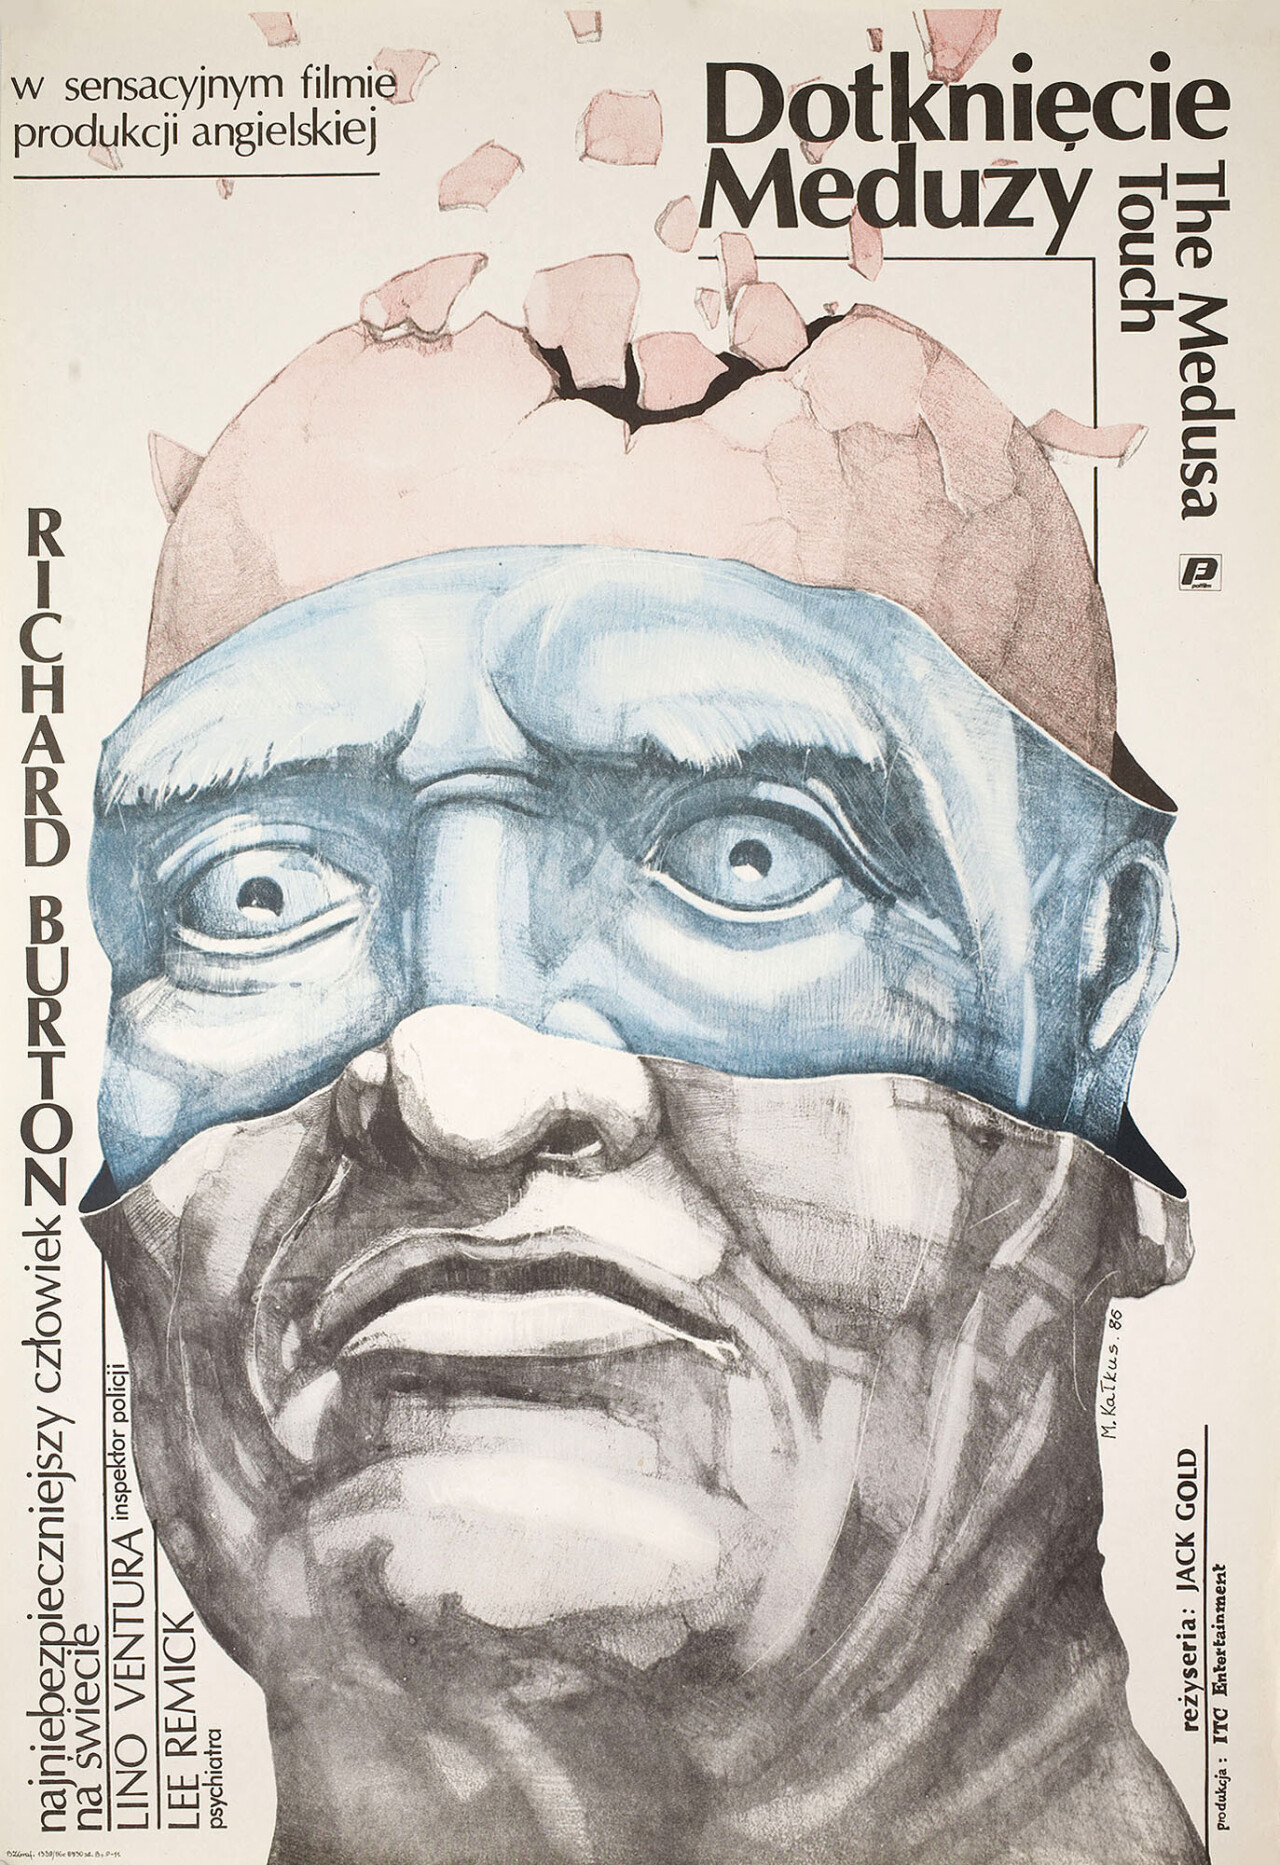 Прикосновение Медузы (The Medusa Touch, 1978), режиссёр Джек Голд, польский постер к фильму, автор Мачей Калкус (ужасы, 1986 год)